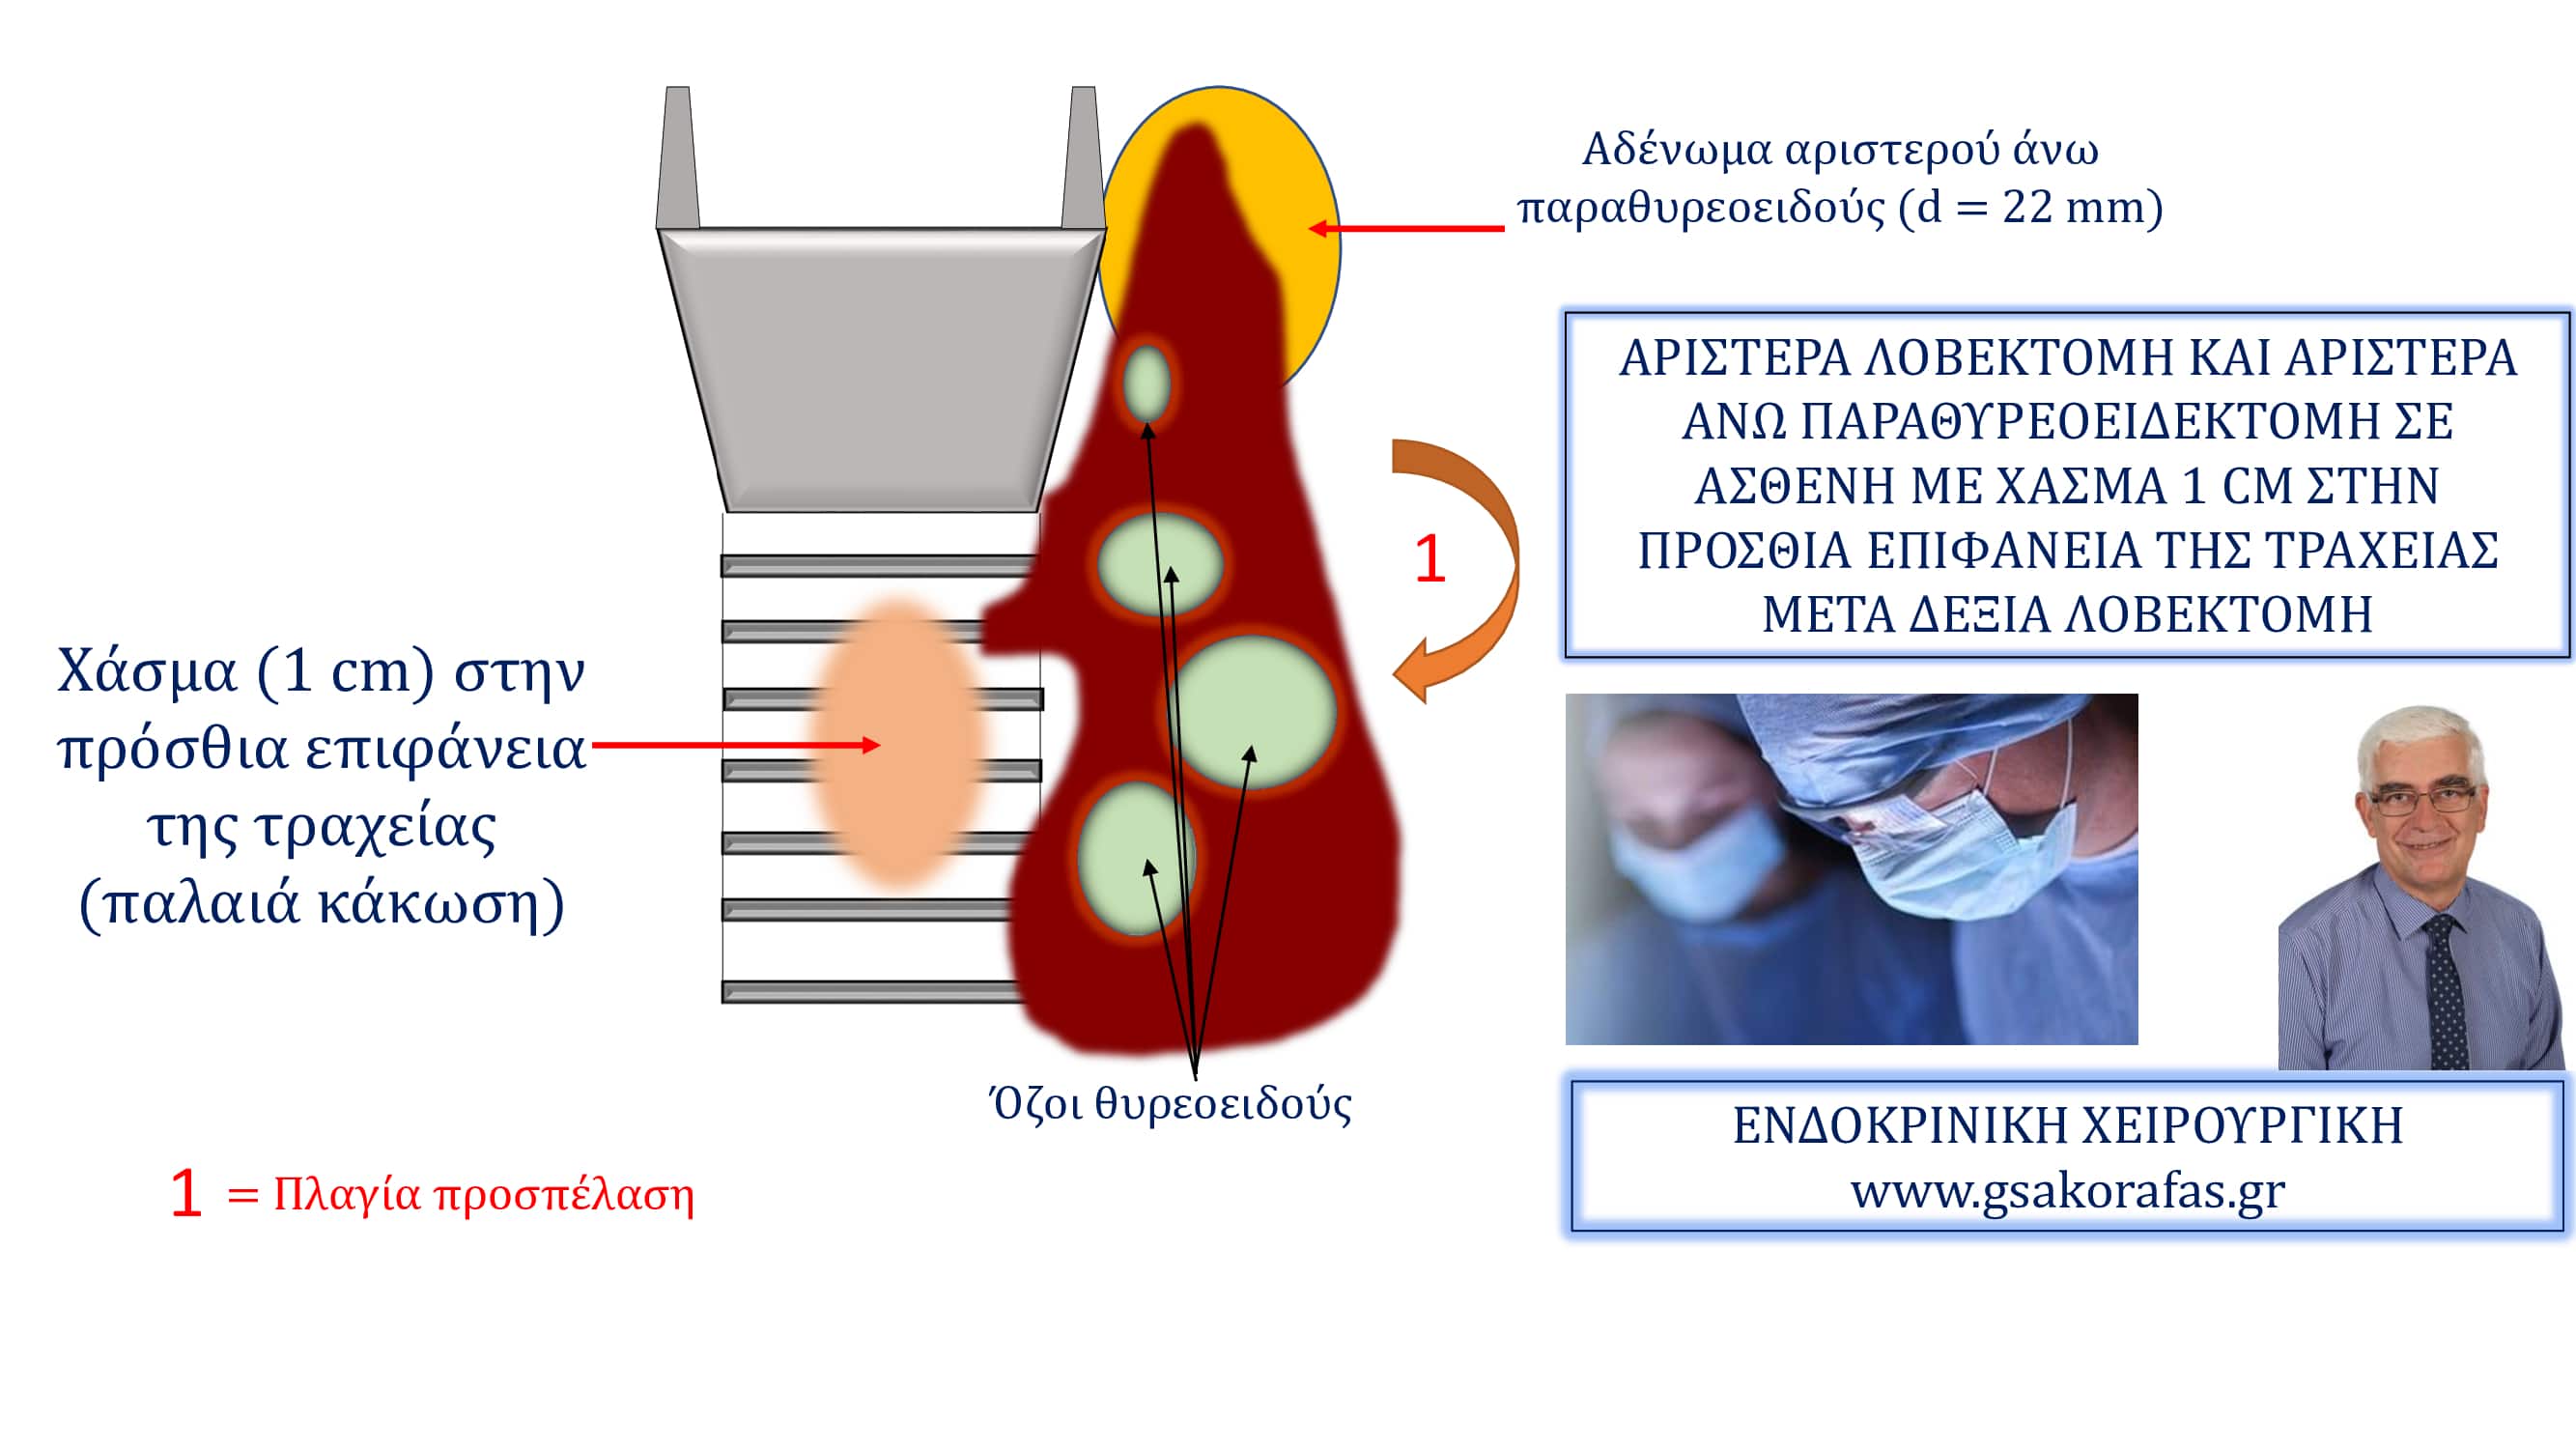 Χάσμα τραχείας, αριστερά λοβεκτομή και αριστερά άνω παραθυρεοειδεκτομή σε ασθενή με ιστορικό δεξιάς λοβεκτομής και κάκωση τραχείας